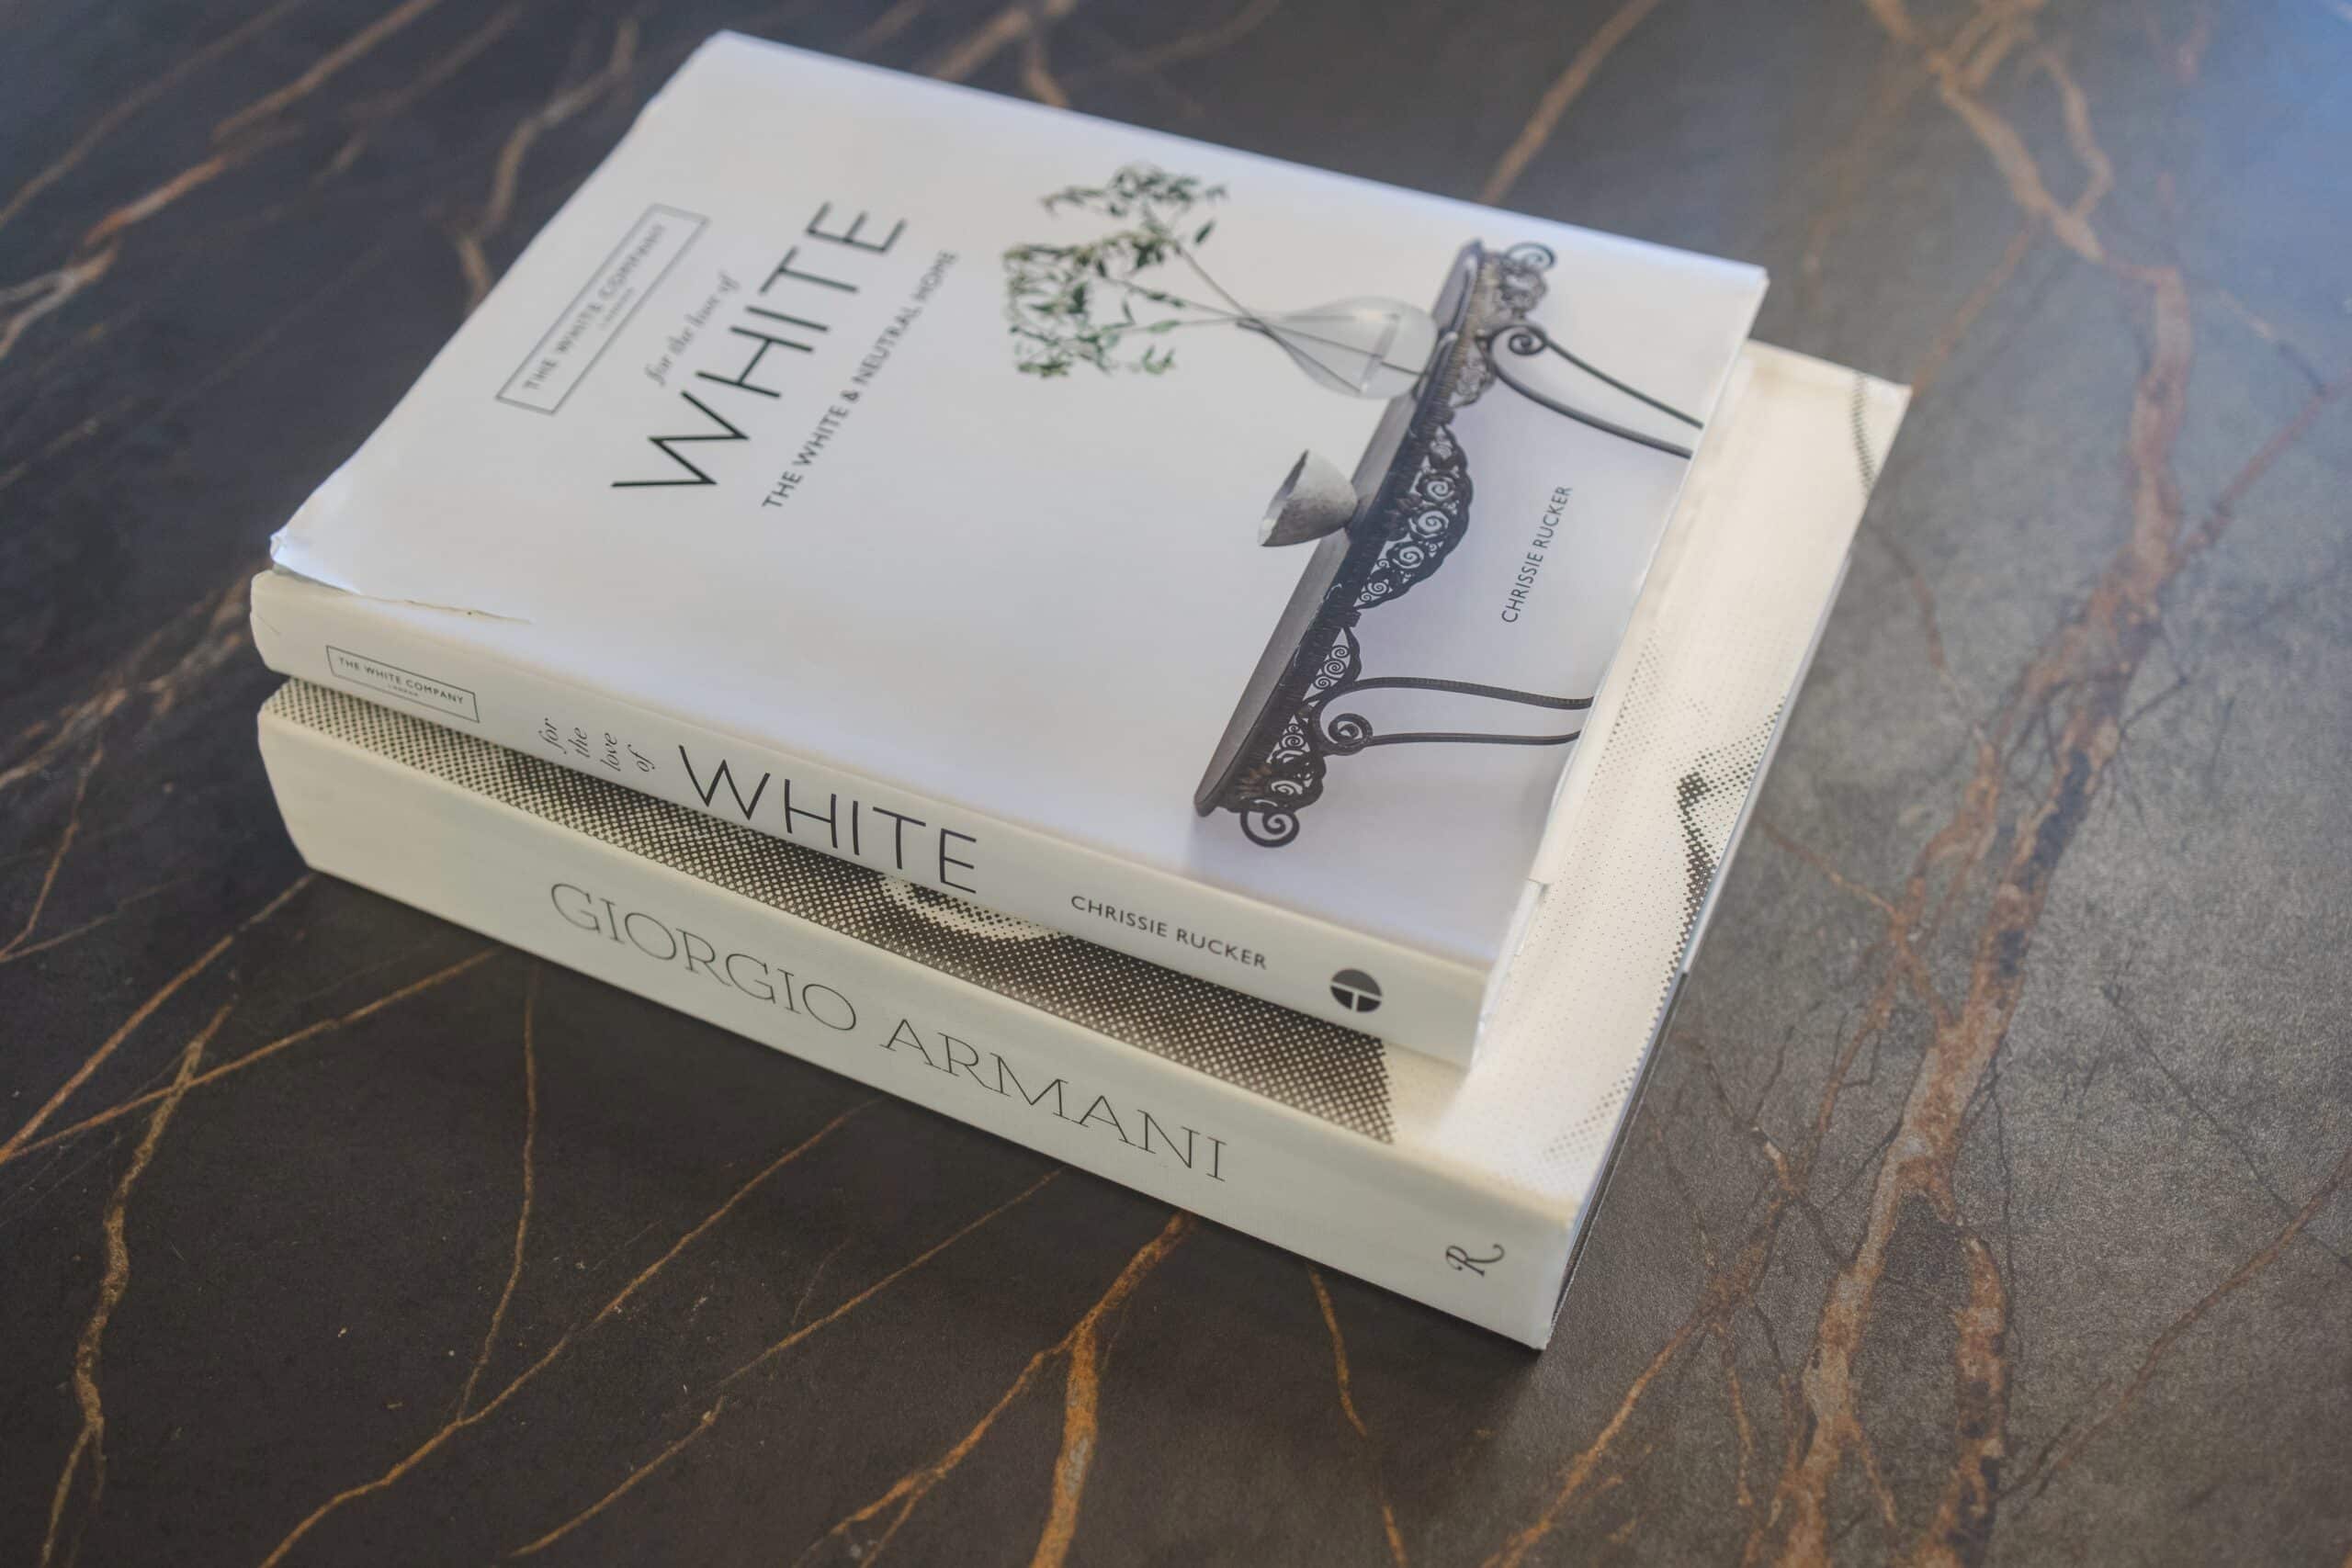 USA Cabinet Store Home And Design Events - Book of White and Giorgio Armani